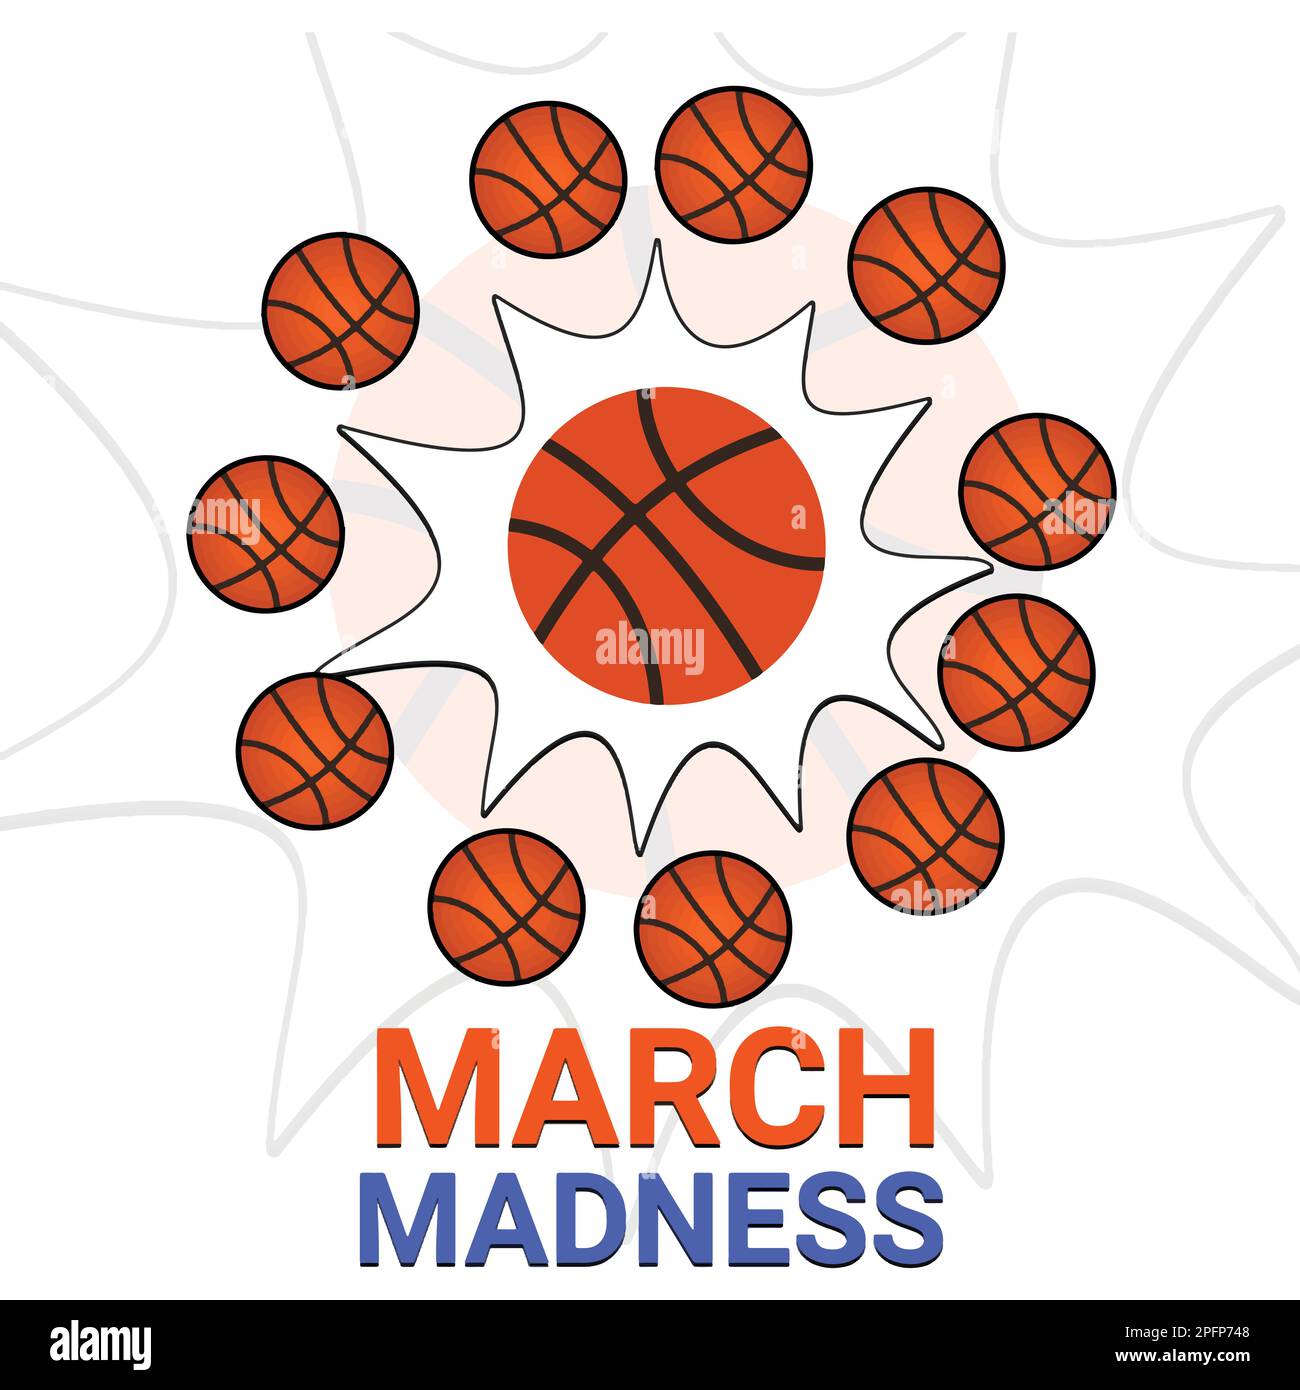 Logo du tournoi de basket-ball, motifs avec ballon de basket-ball. Motif March Madness de basket-ball. Illustration vectorielle Illustration de Vecteur